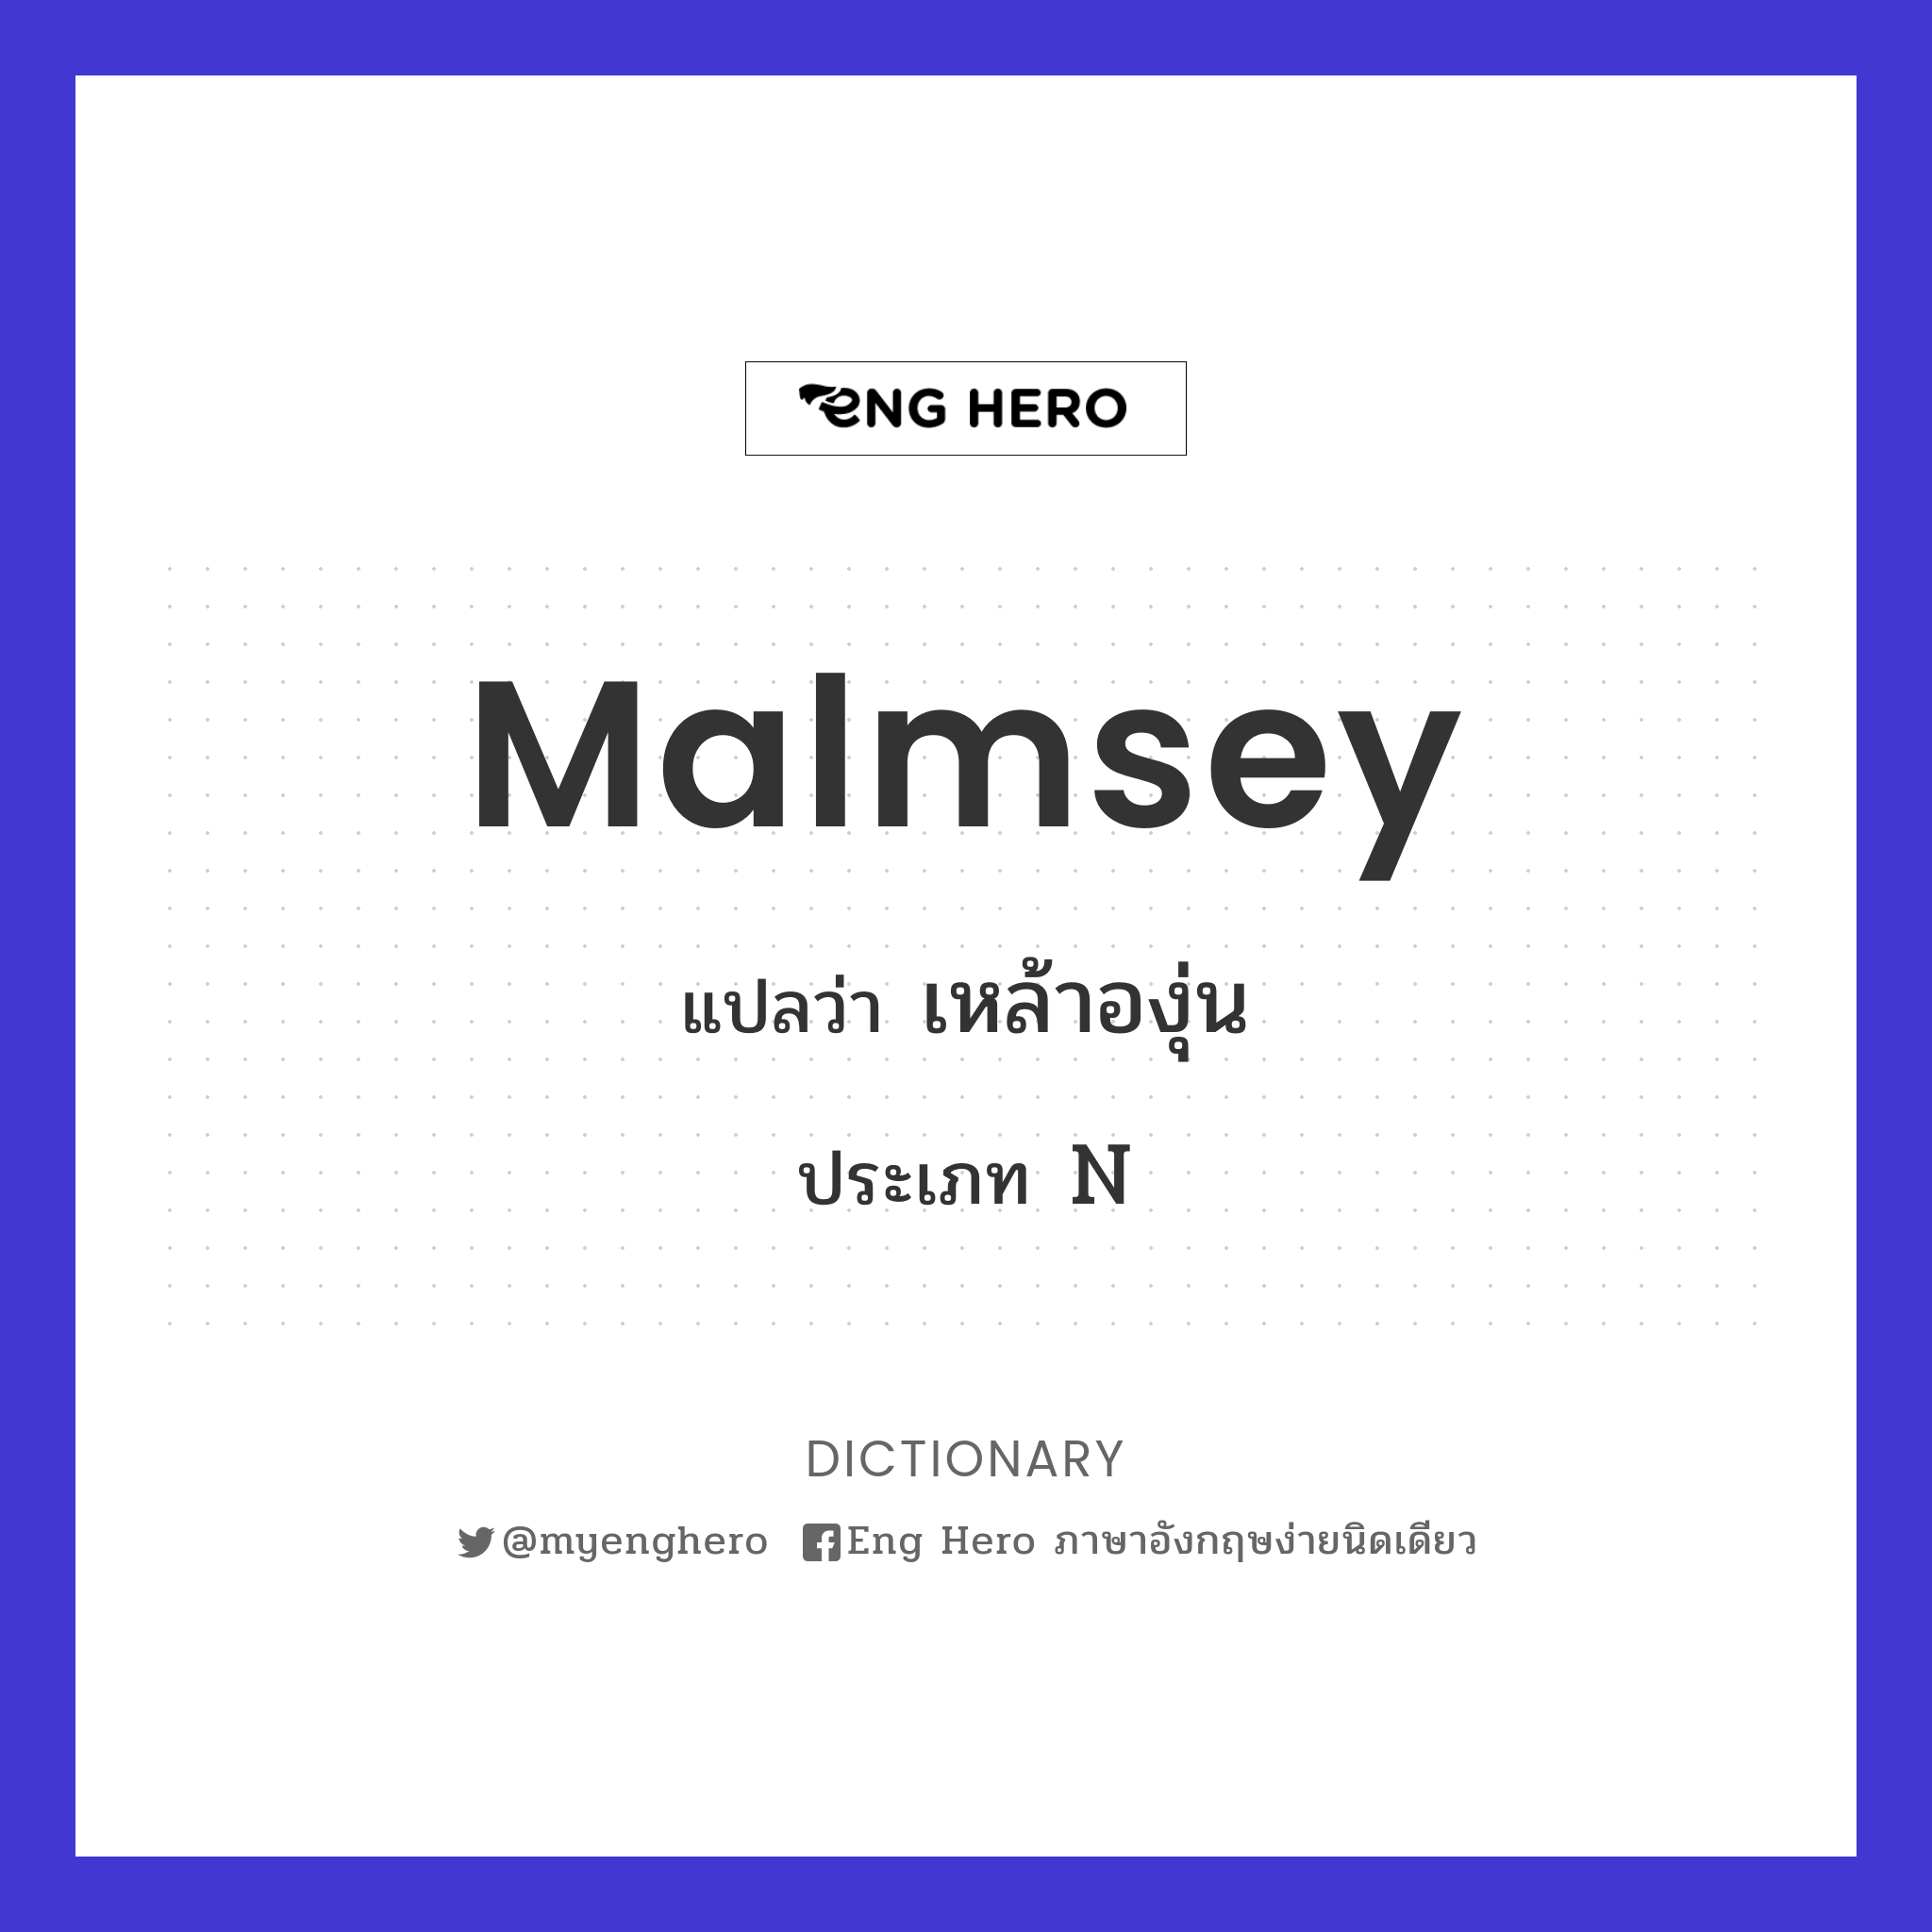 malmsey